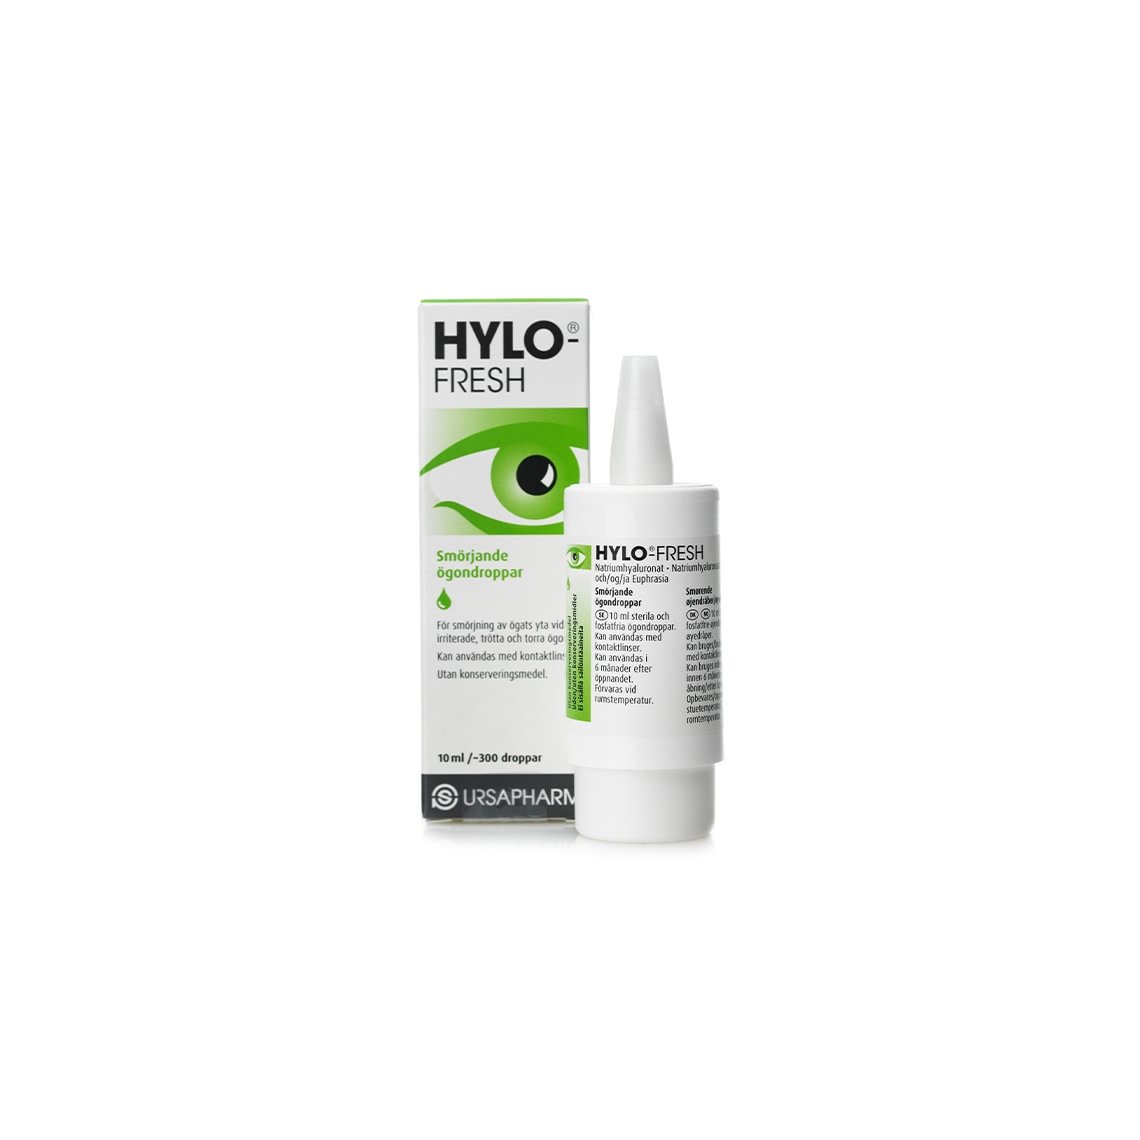 HYLO-FRESH Smörjande ögondroppar 10 ml